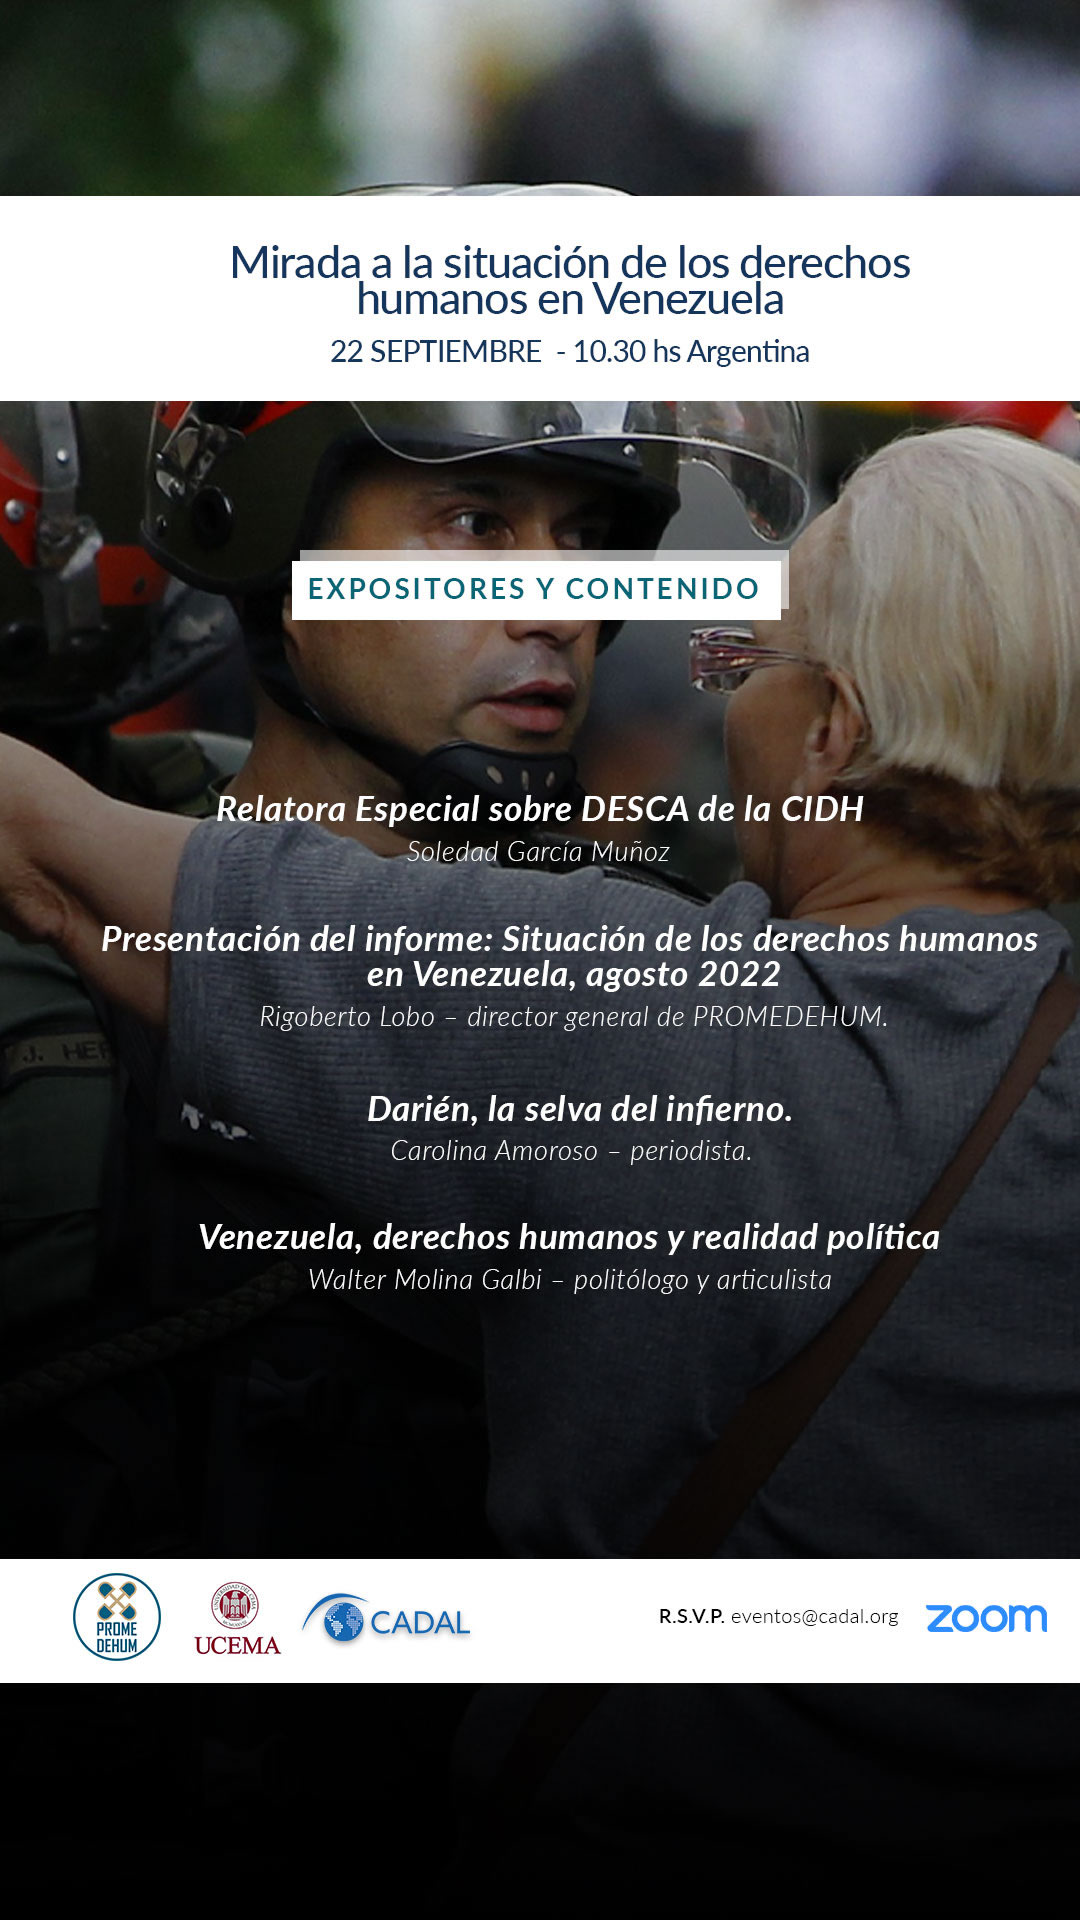 Mirada a la situación de los derechos humanos en Venezuela